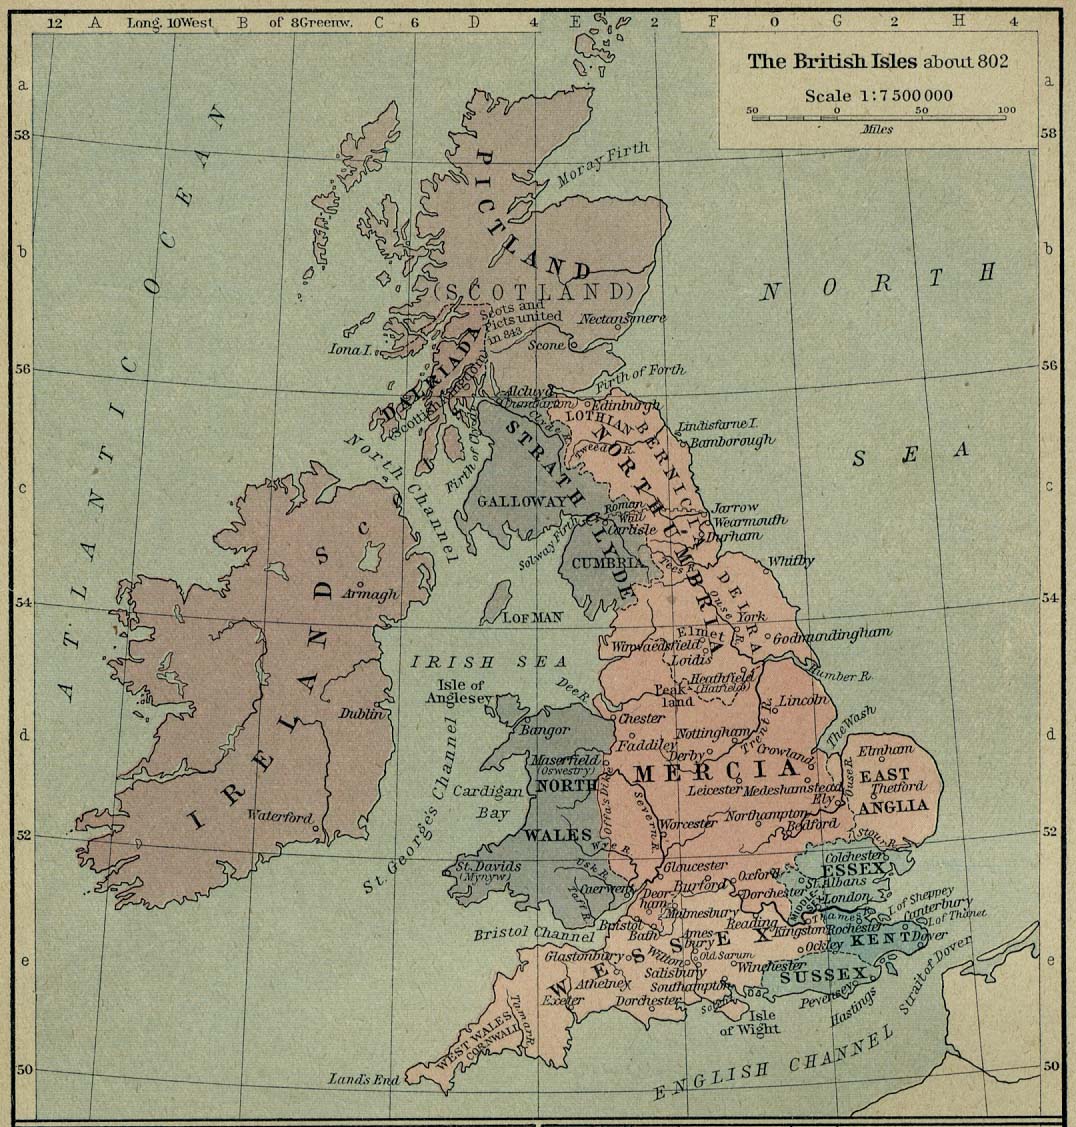 The British Isles c. 802 C. E.